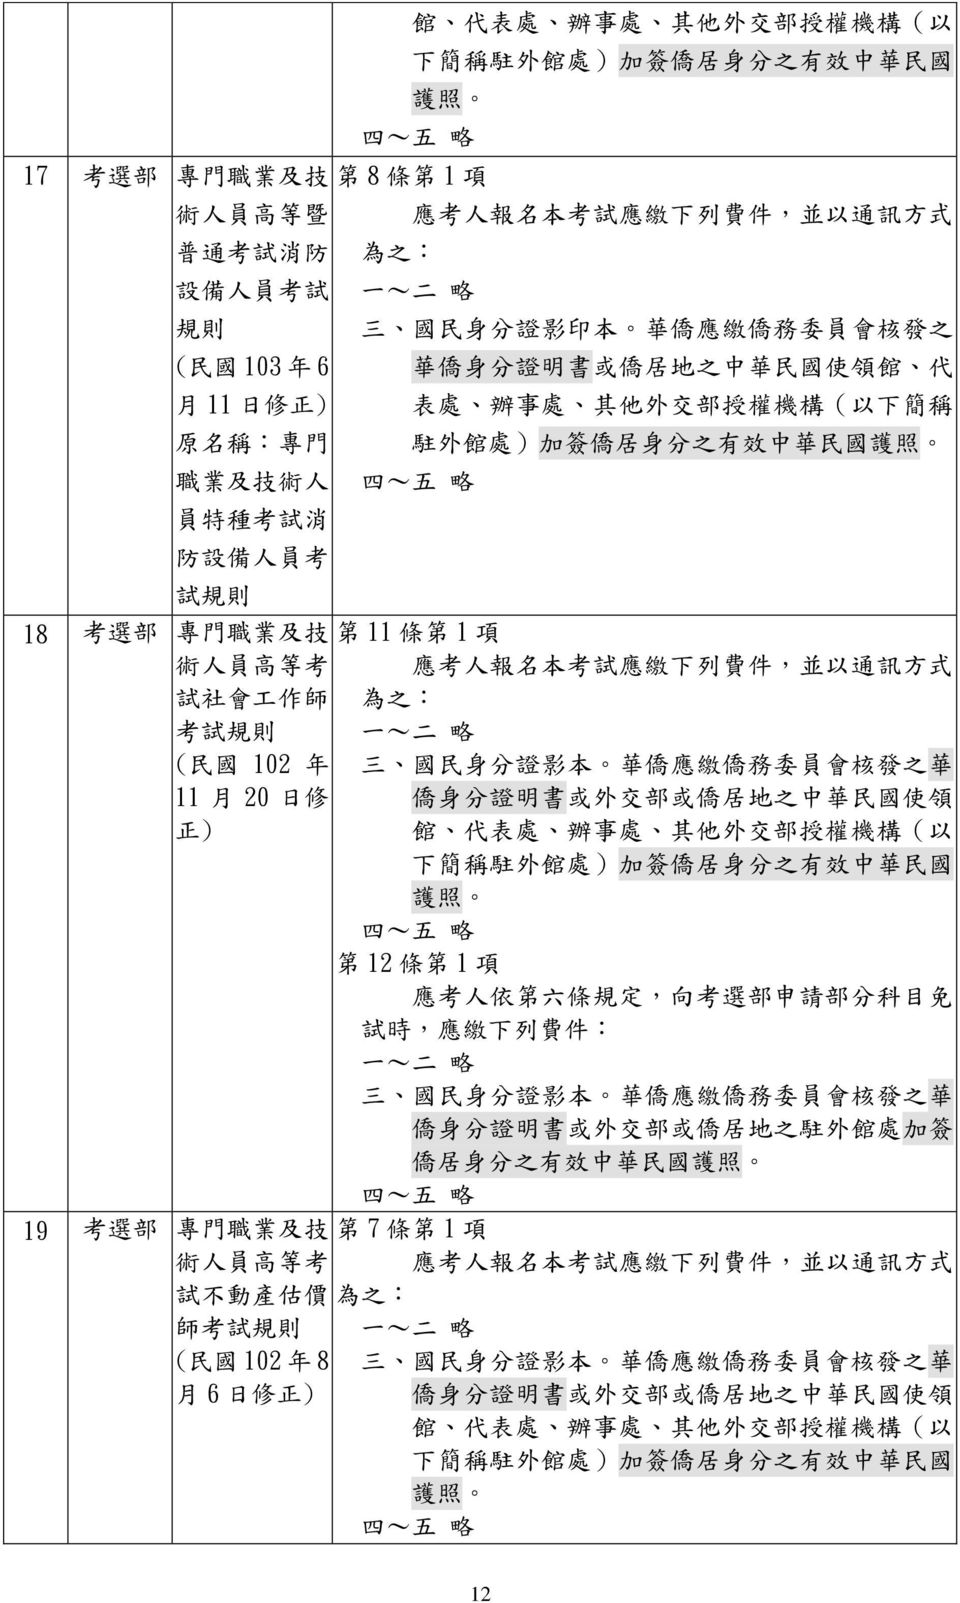 簽 僑 居 身 分 之 有 效 中 華 民 國 試 18 考 選 部 專 門 職 業 及 技 第 11 條 第 1 項 試 社 會 工 作 師 考 試 ( 民 國 102 年 11 月 20 日 修 第 12 條 第 1 項 應 考 人 依 第 六 條 規 定, 向 考